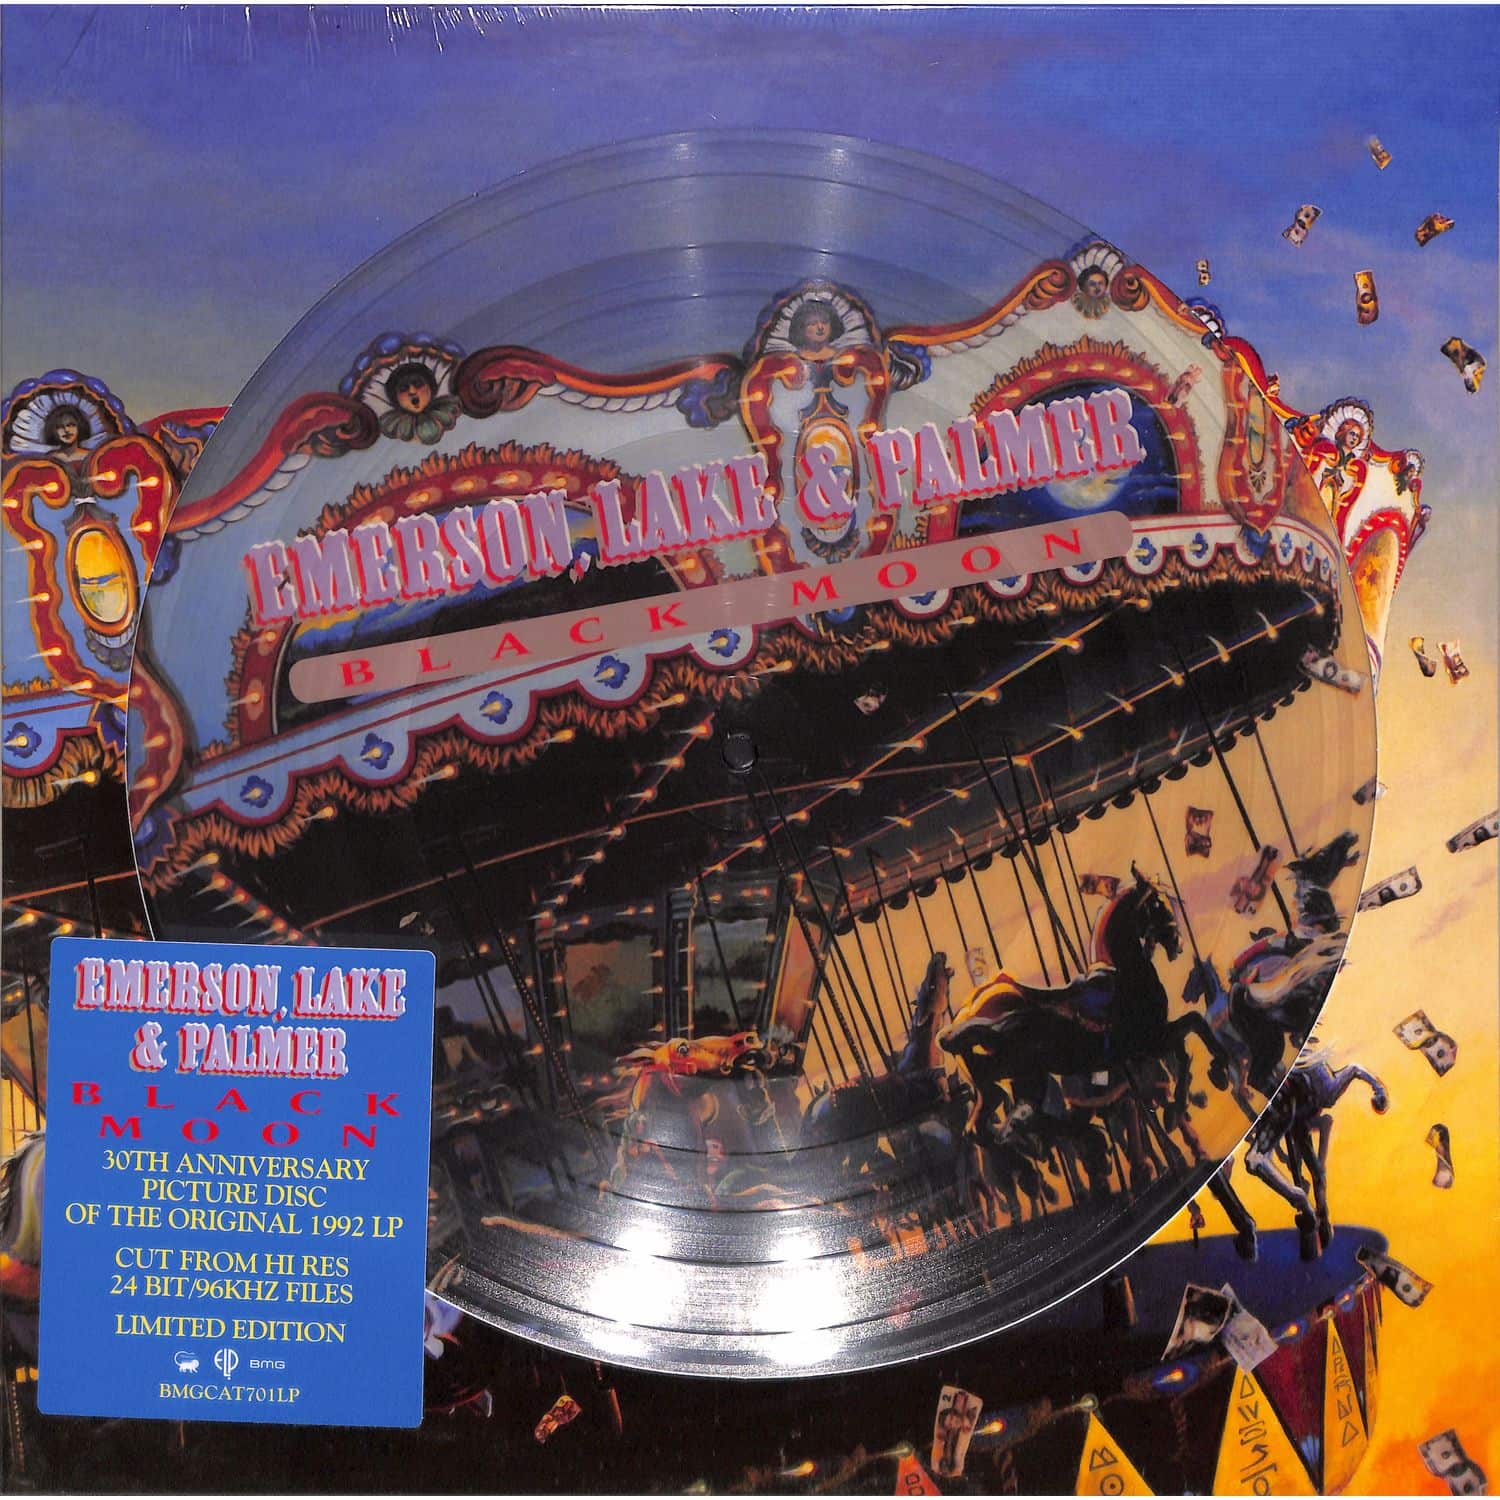 Lake Emerson & Palmer - BLACK MOON 